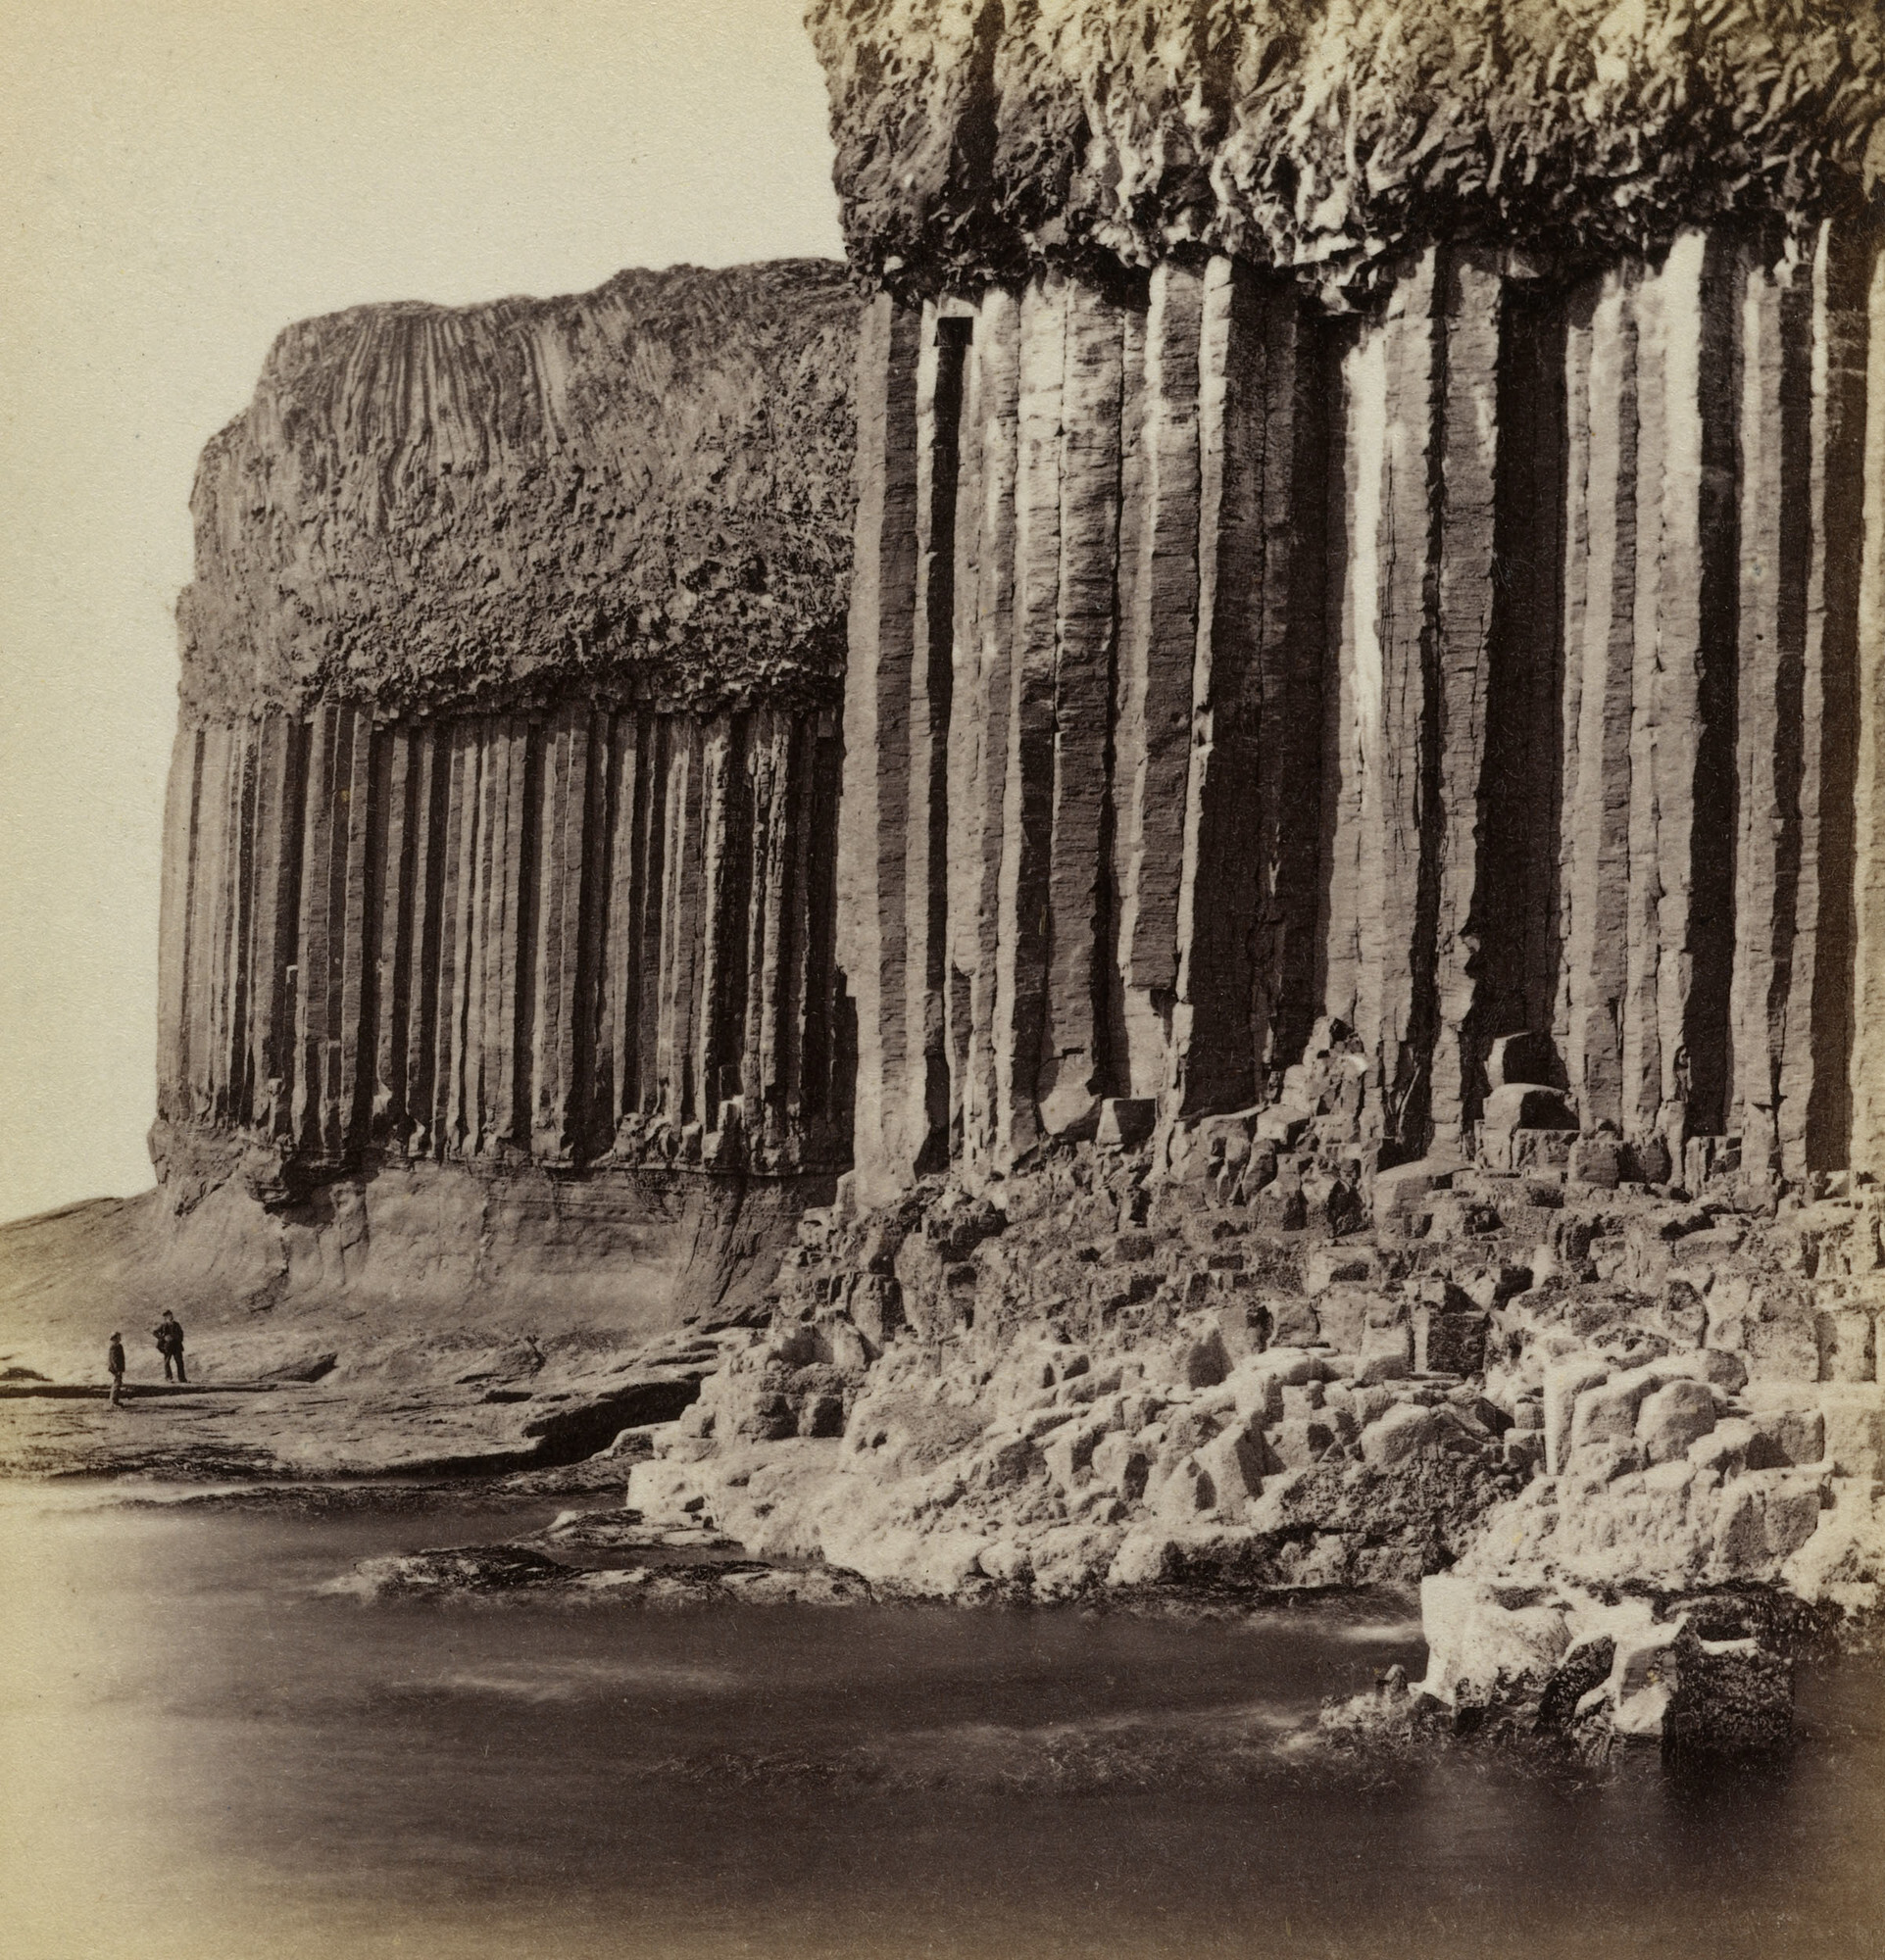 Базальтовы колонны острова Стаффа у побережья Шотландии, 1859. Фотограф Джордж Вашингтон Уилсон